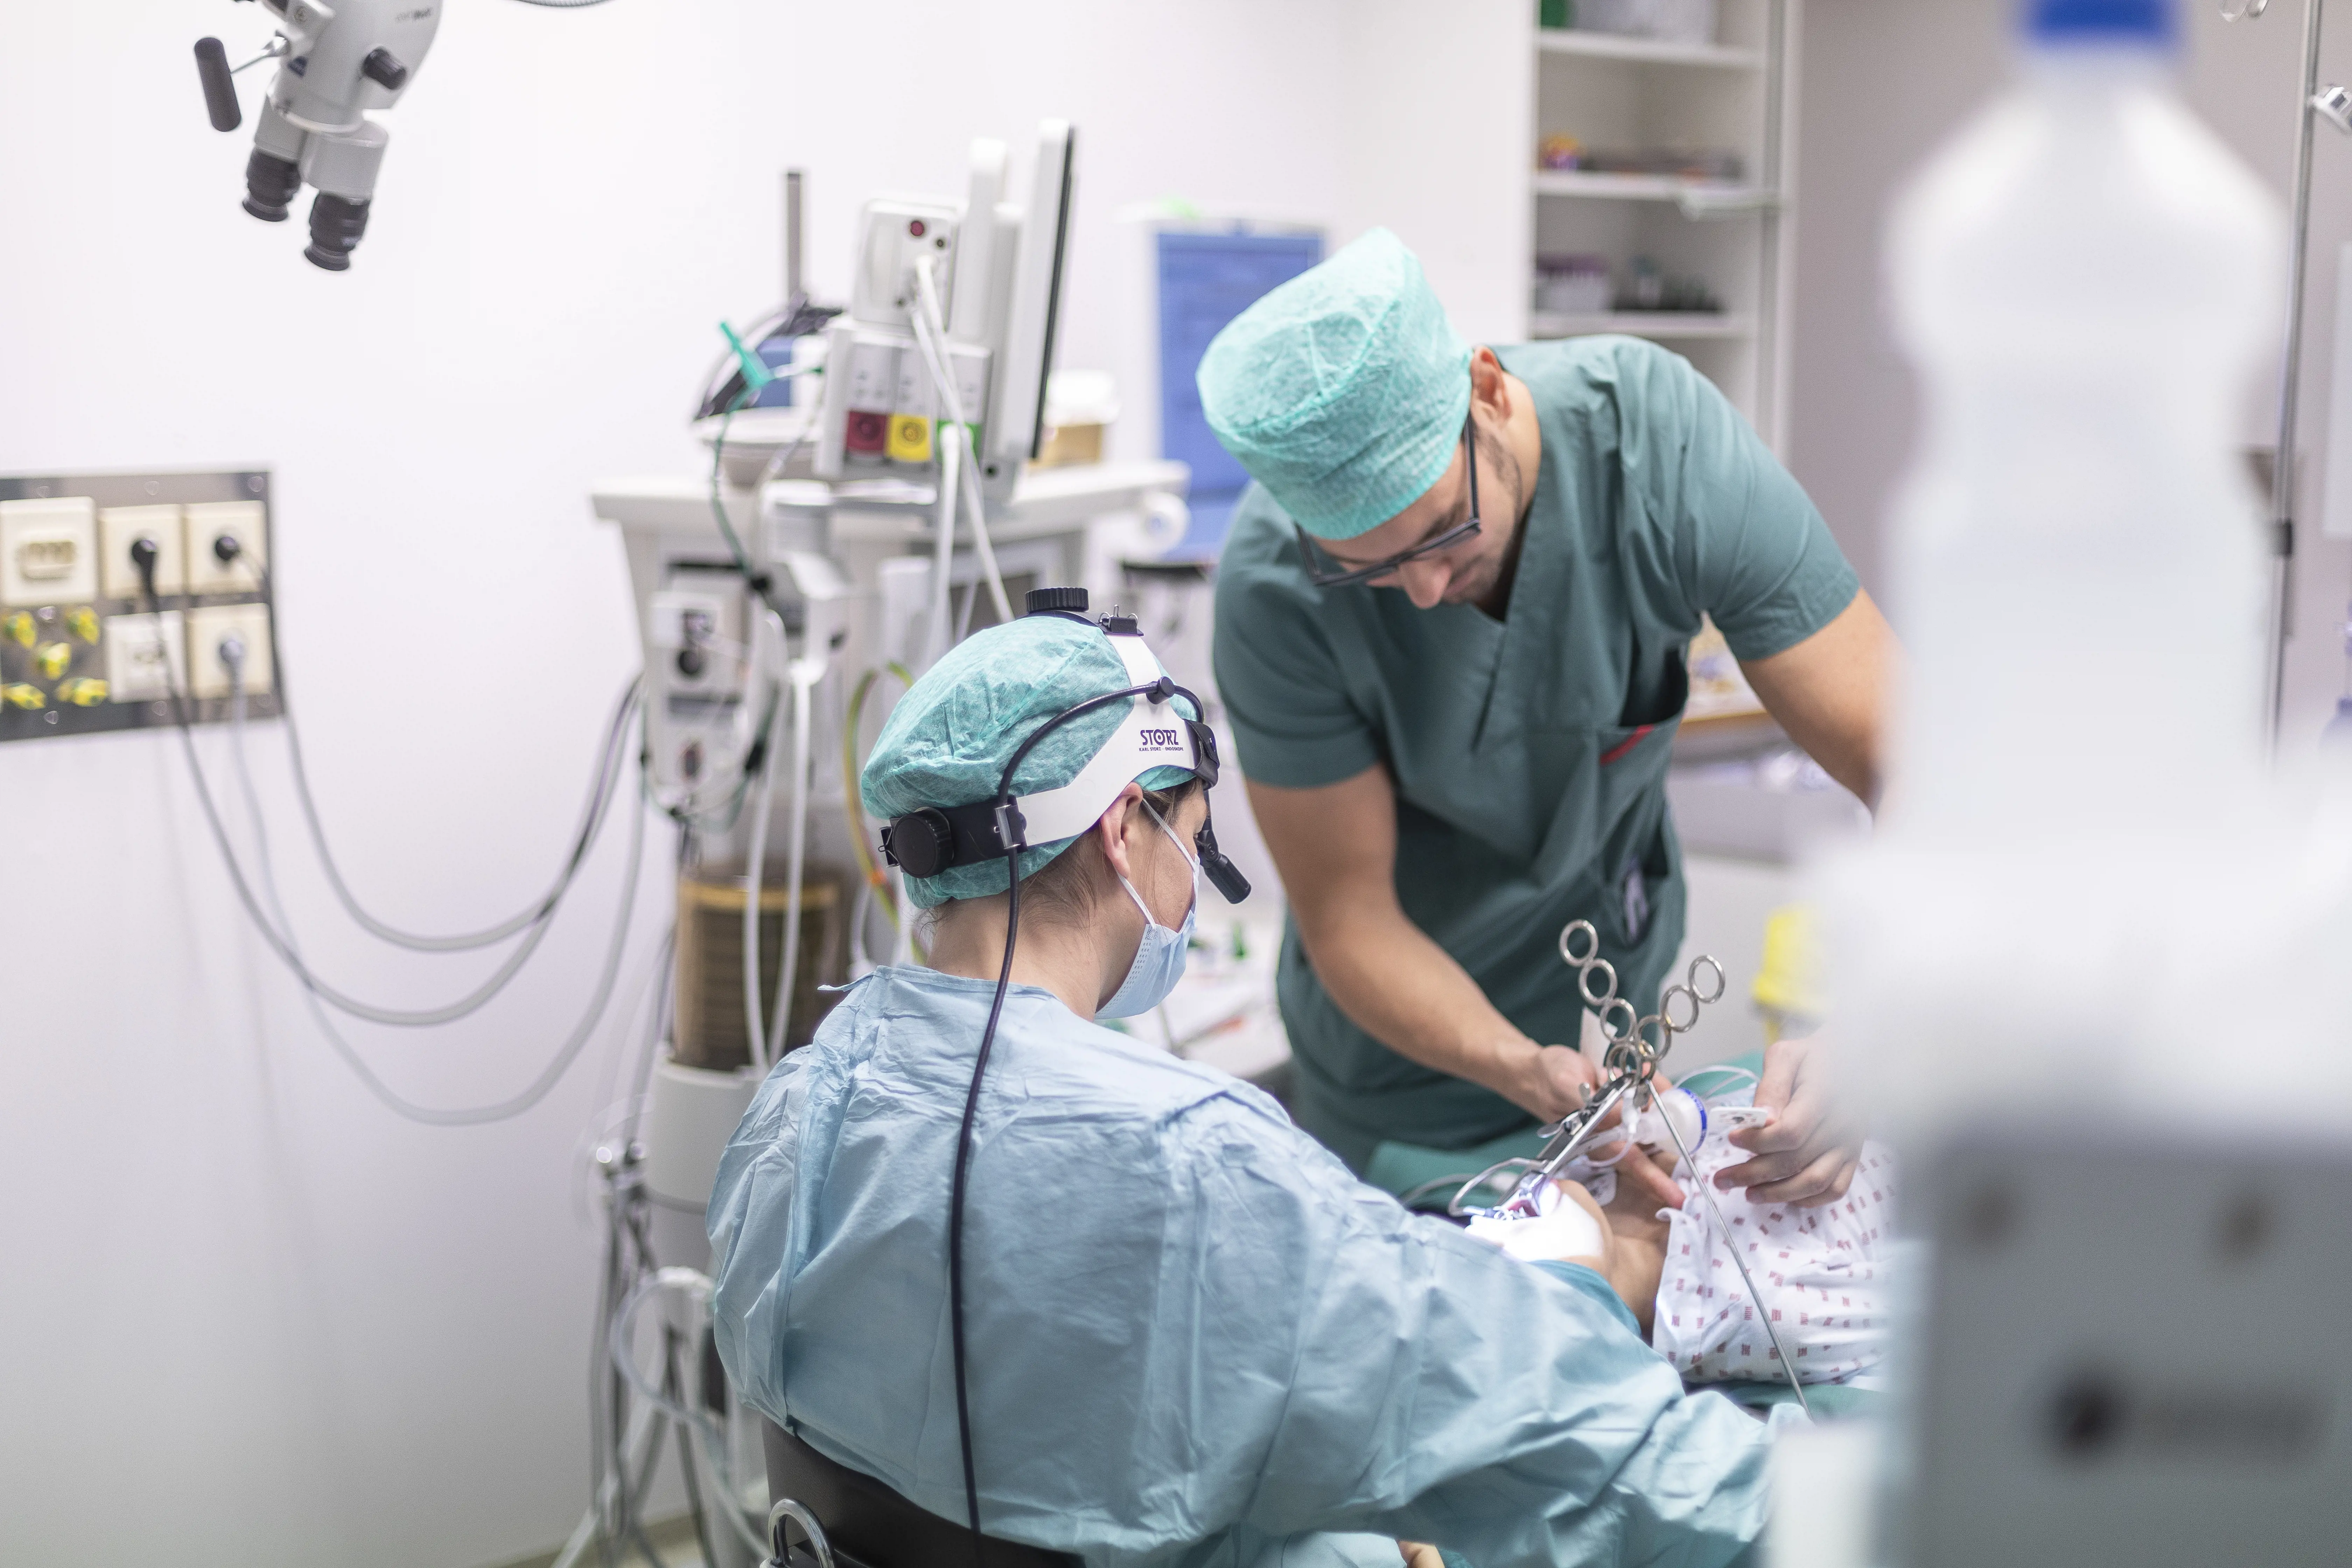 Anestesilege gir narkose i forbindelse med en operasjon. Foto.